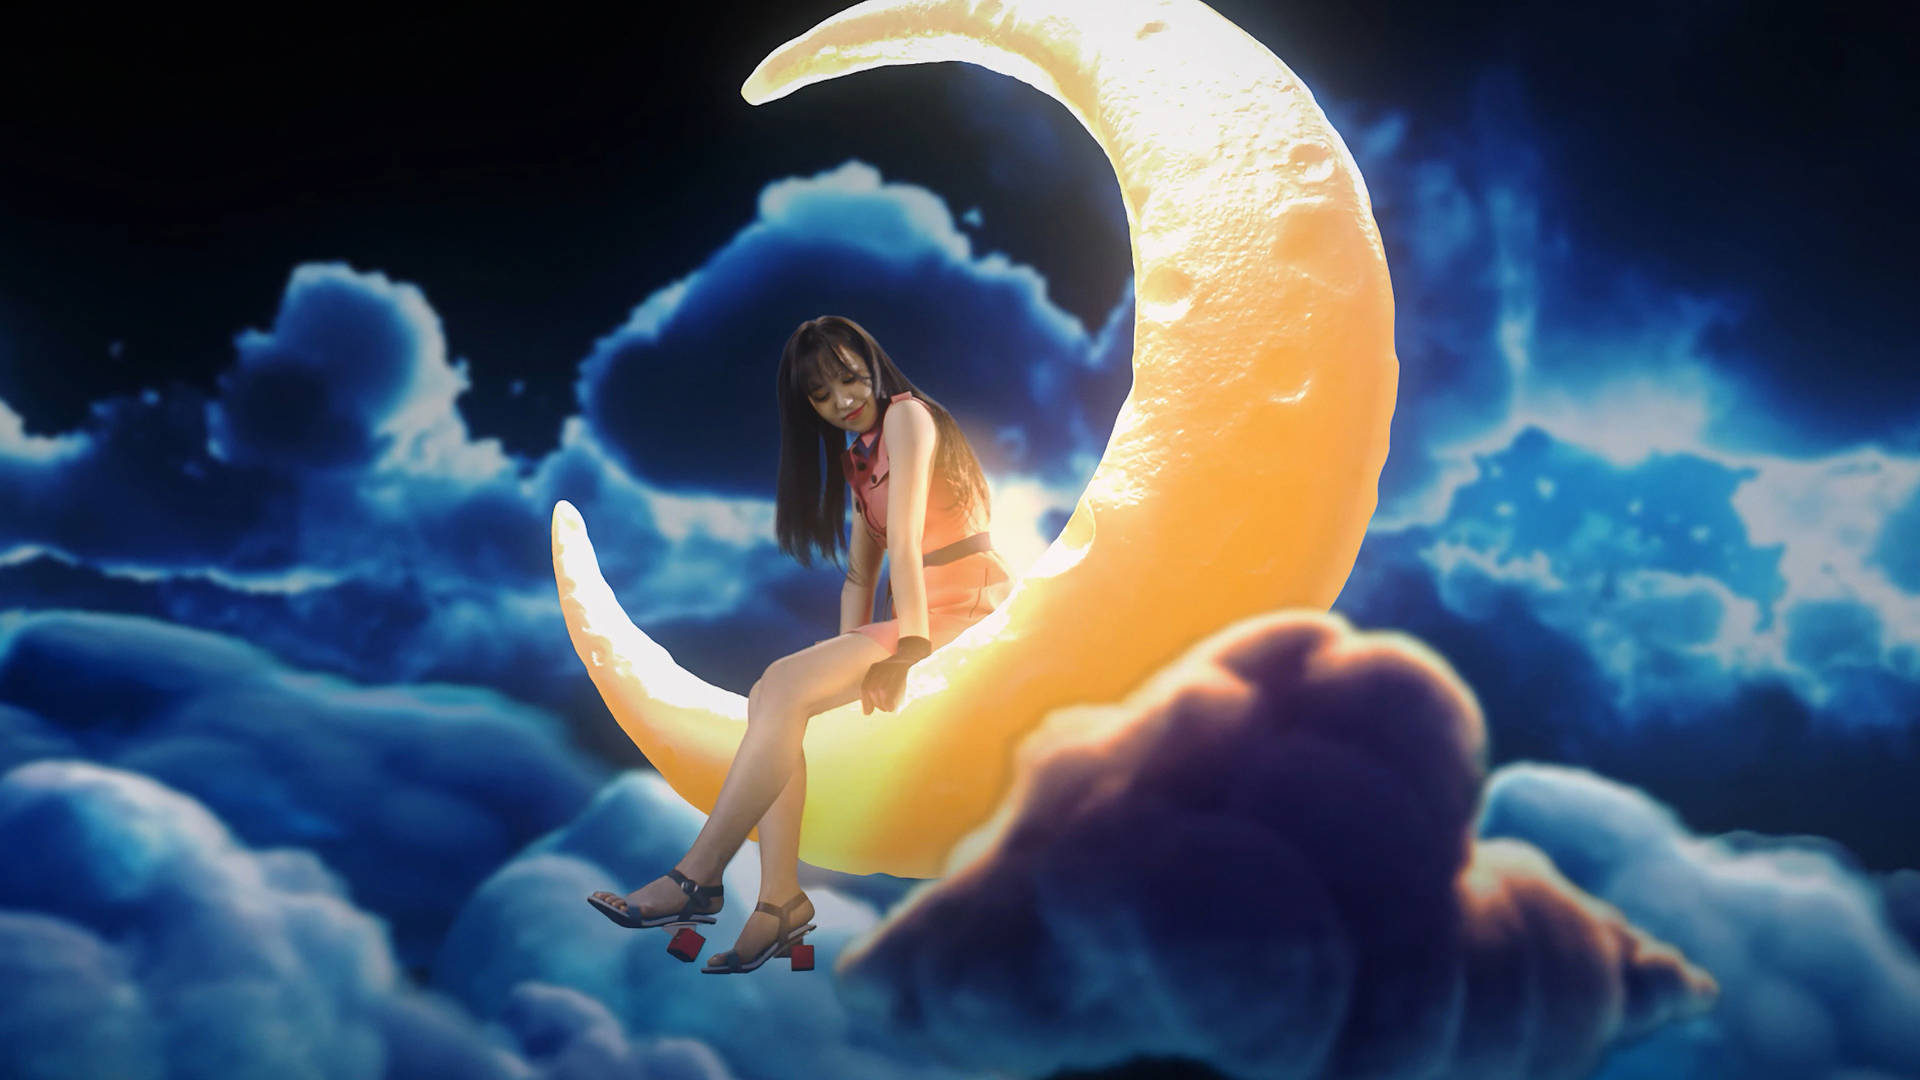 Red Velvet Wendy On Moon Background